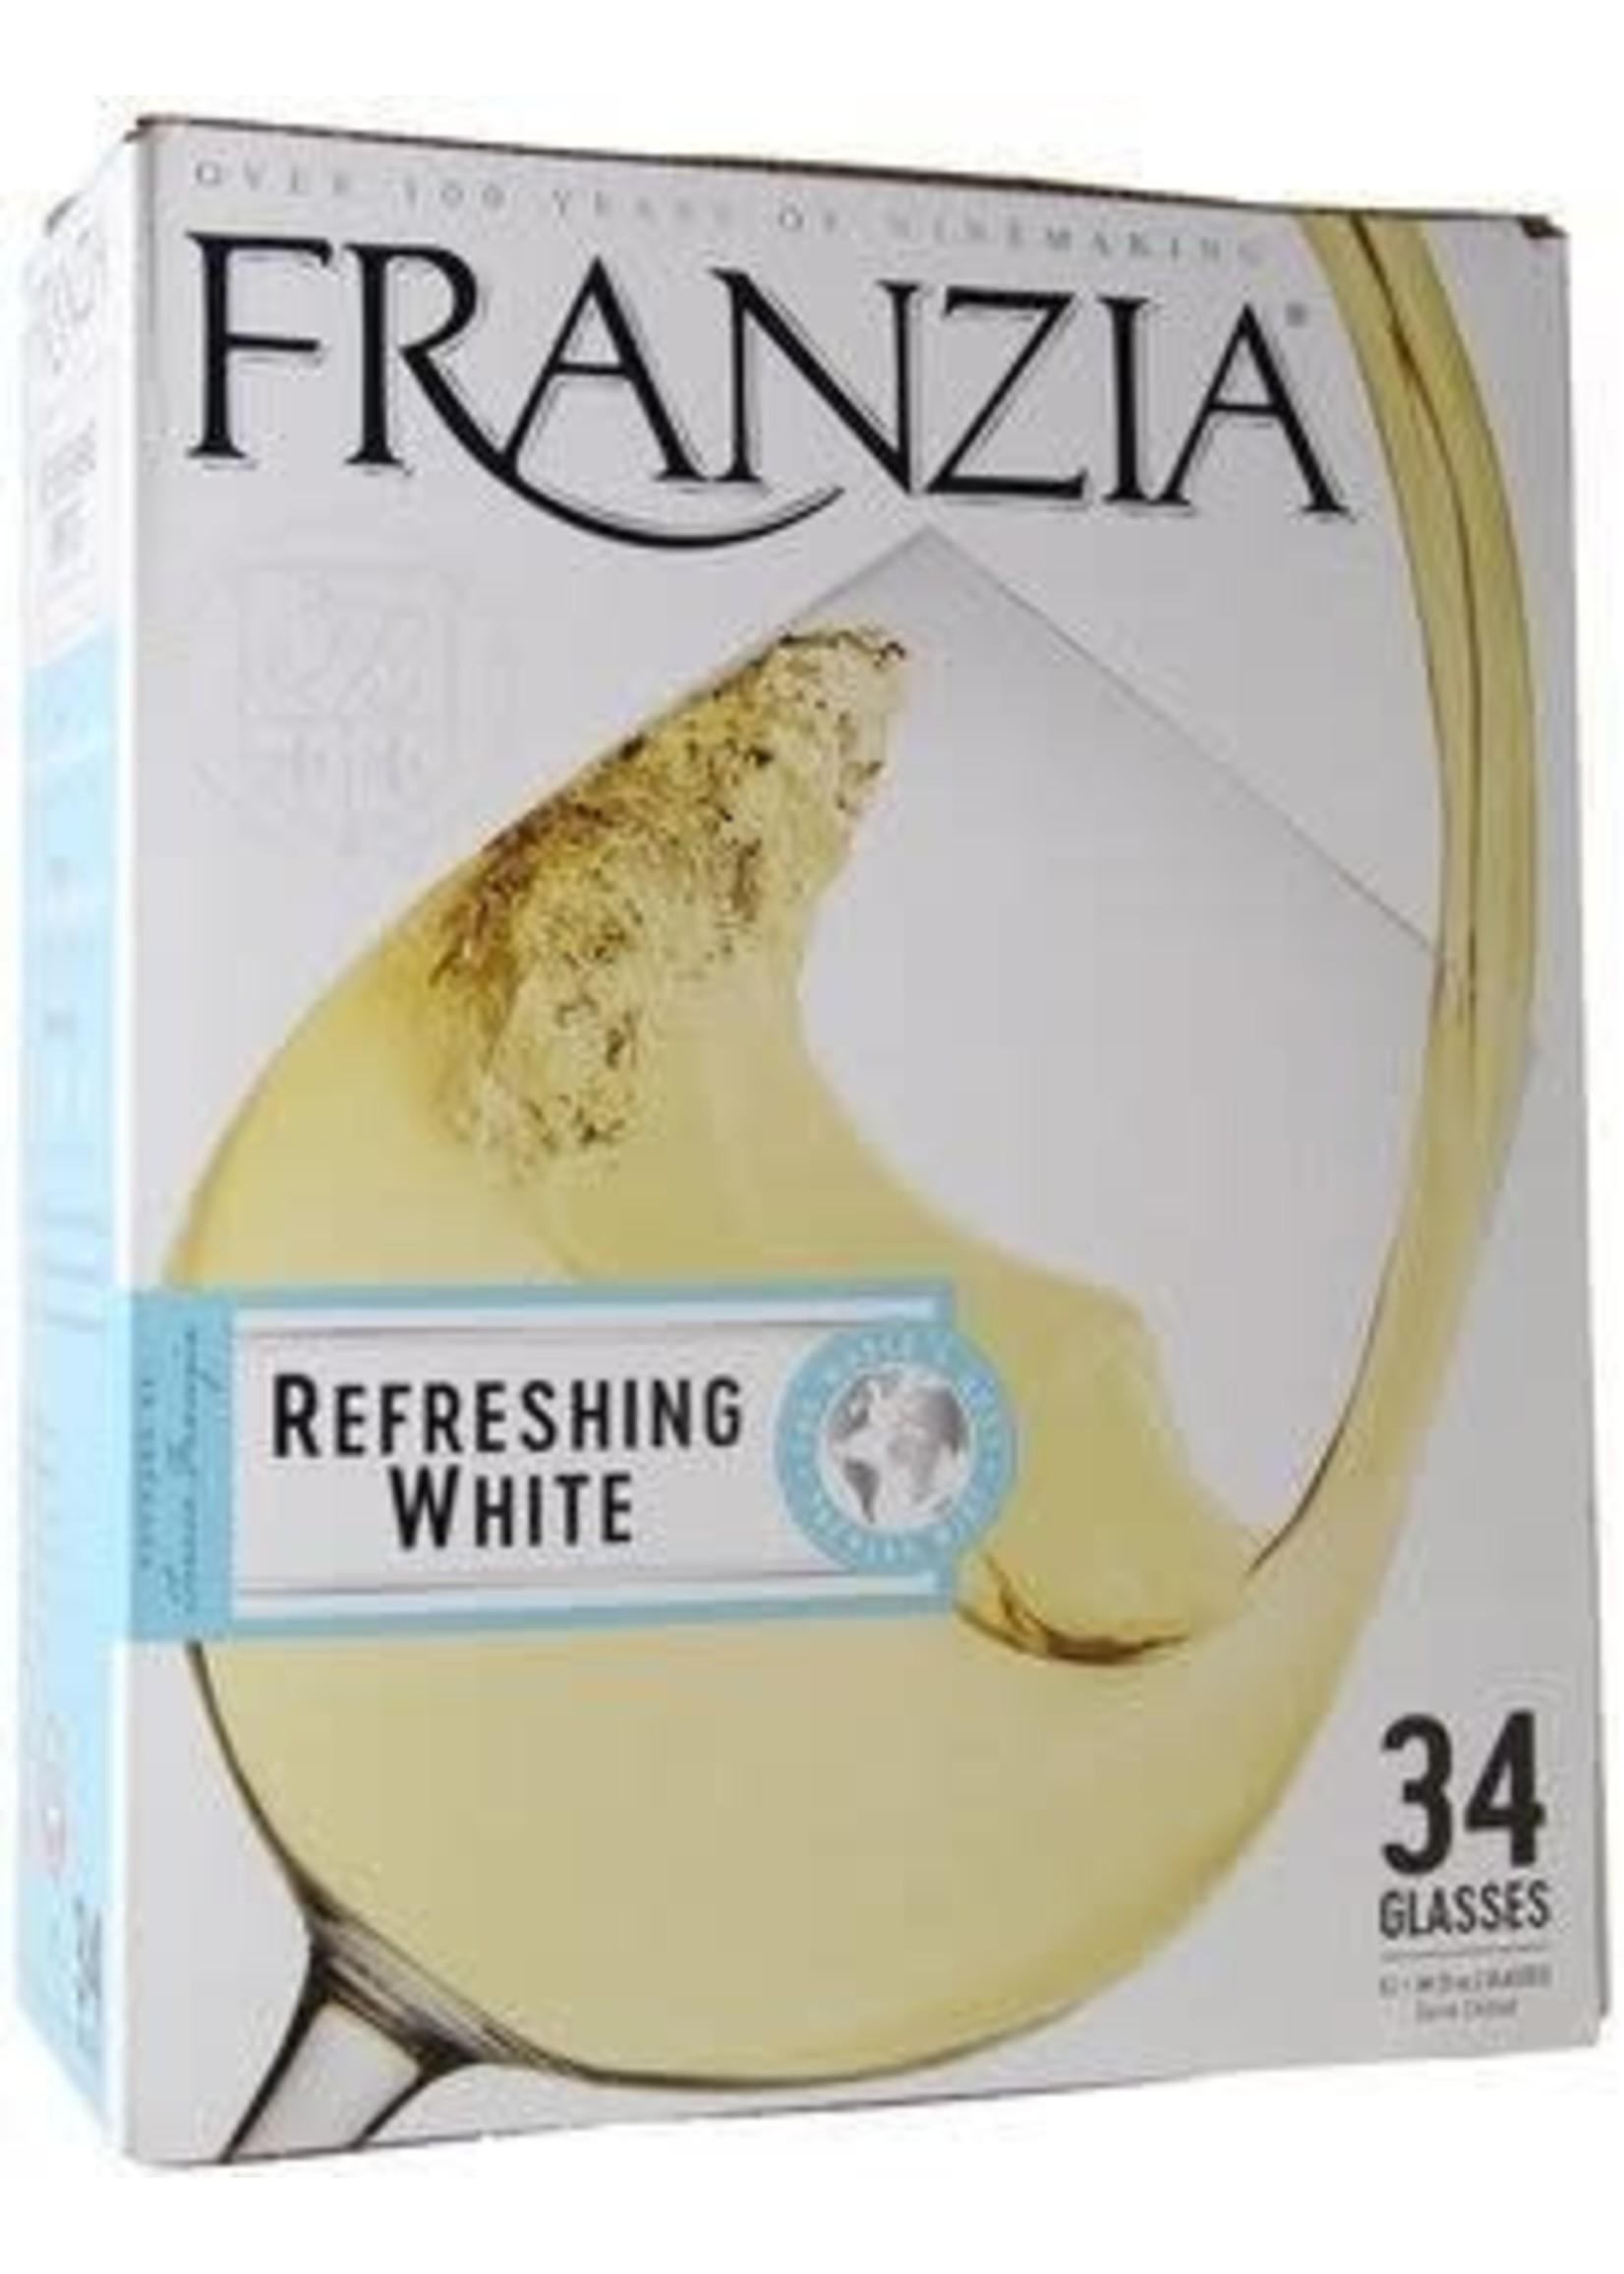 FRANZIA REFRESHING WHITE 5L